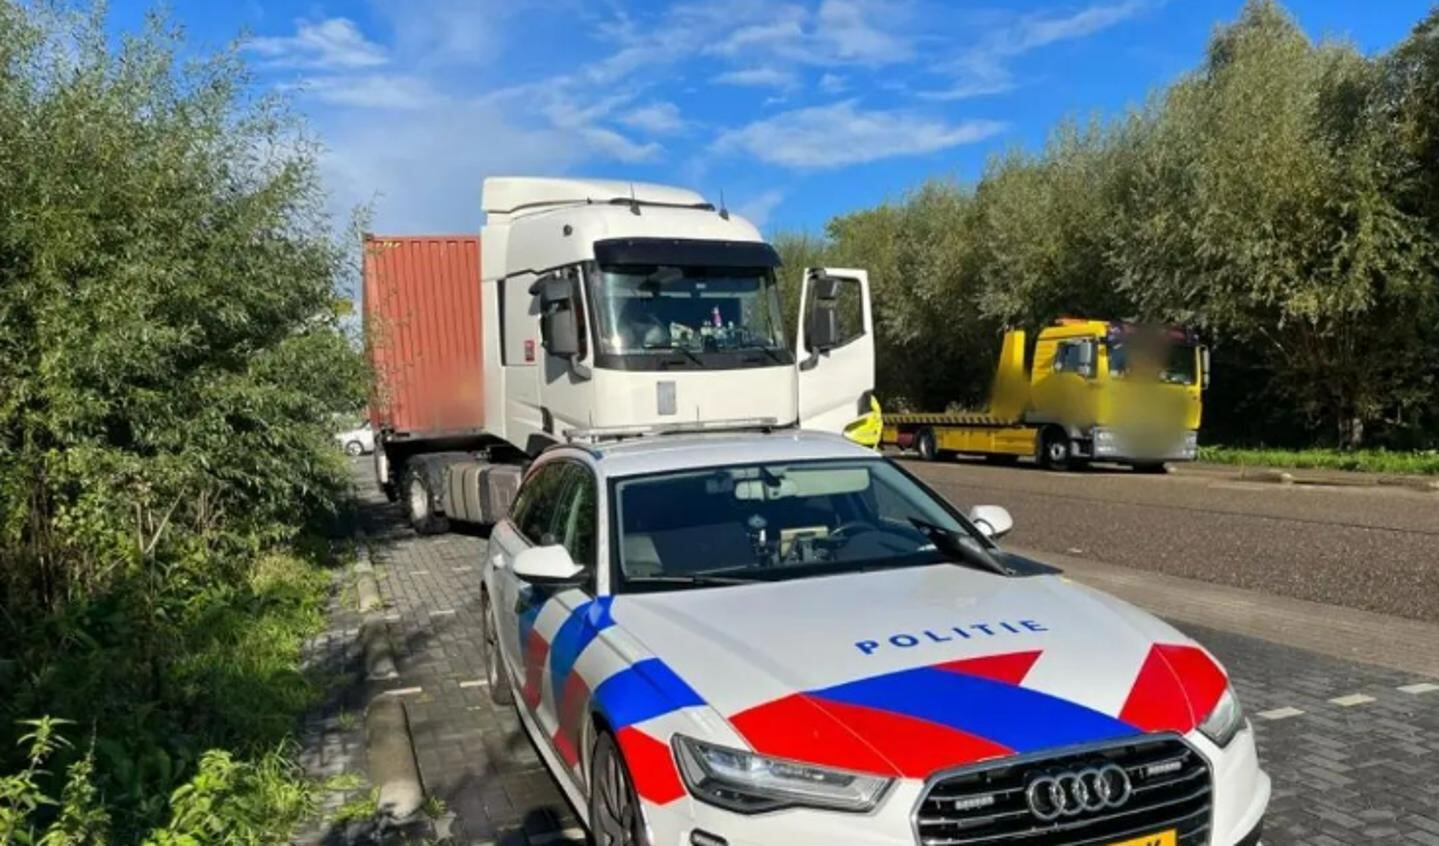 • De politie nam de vrachtwagen in beslag.